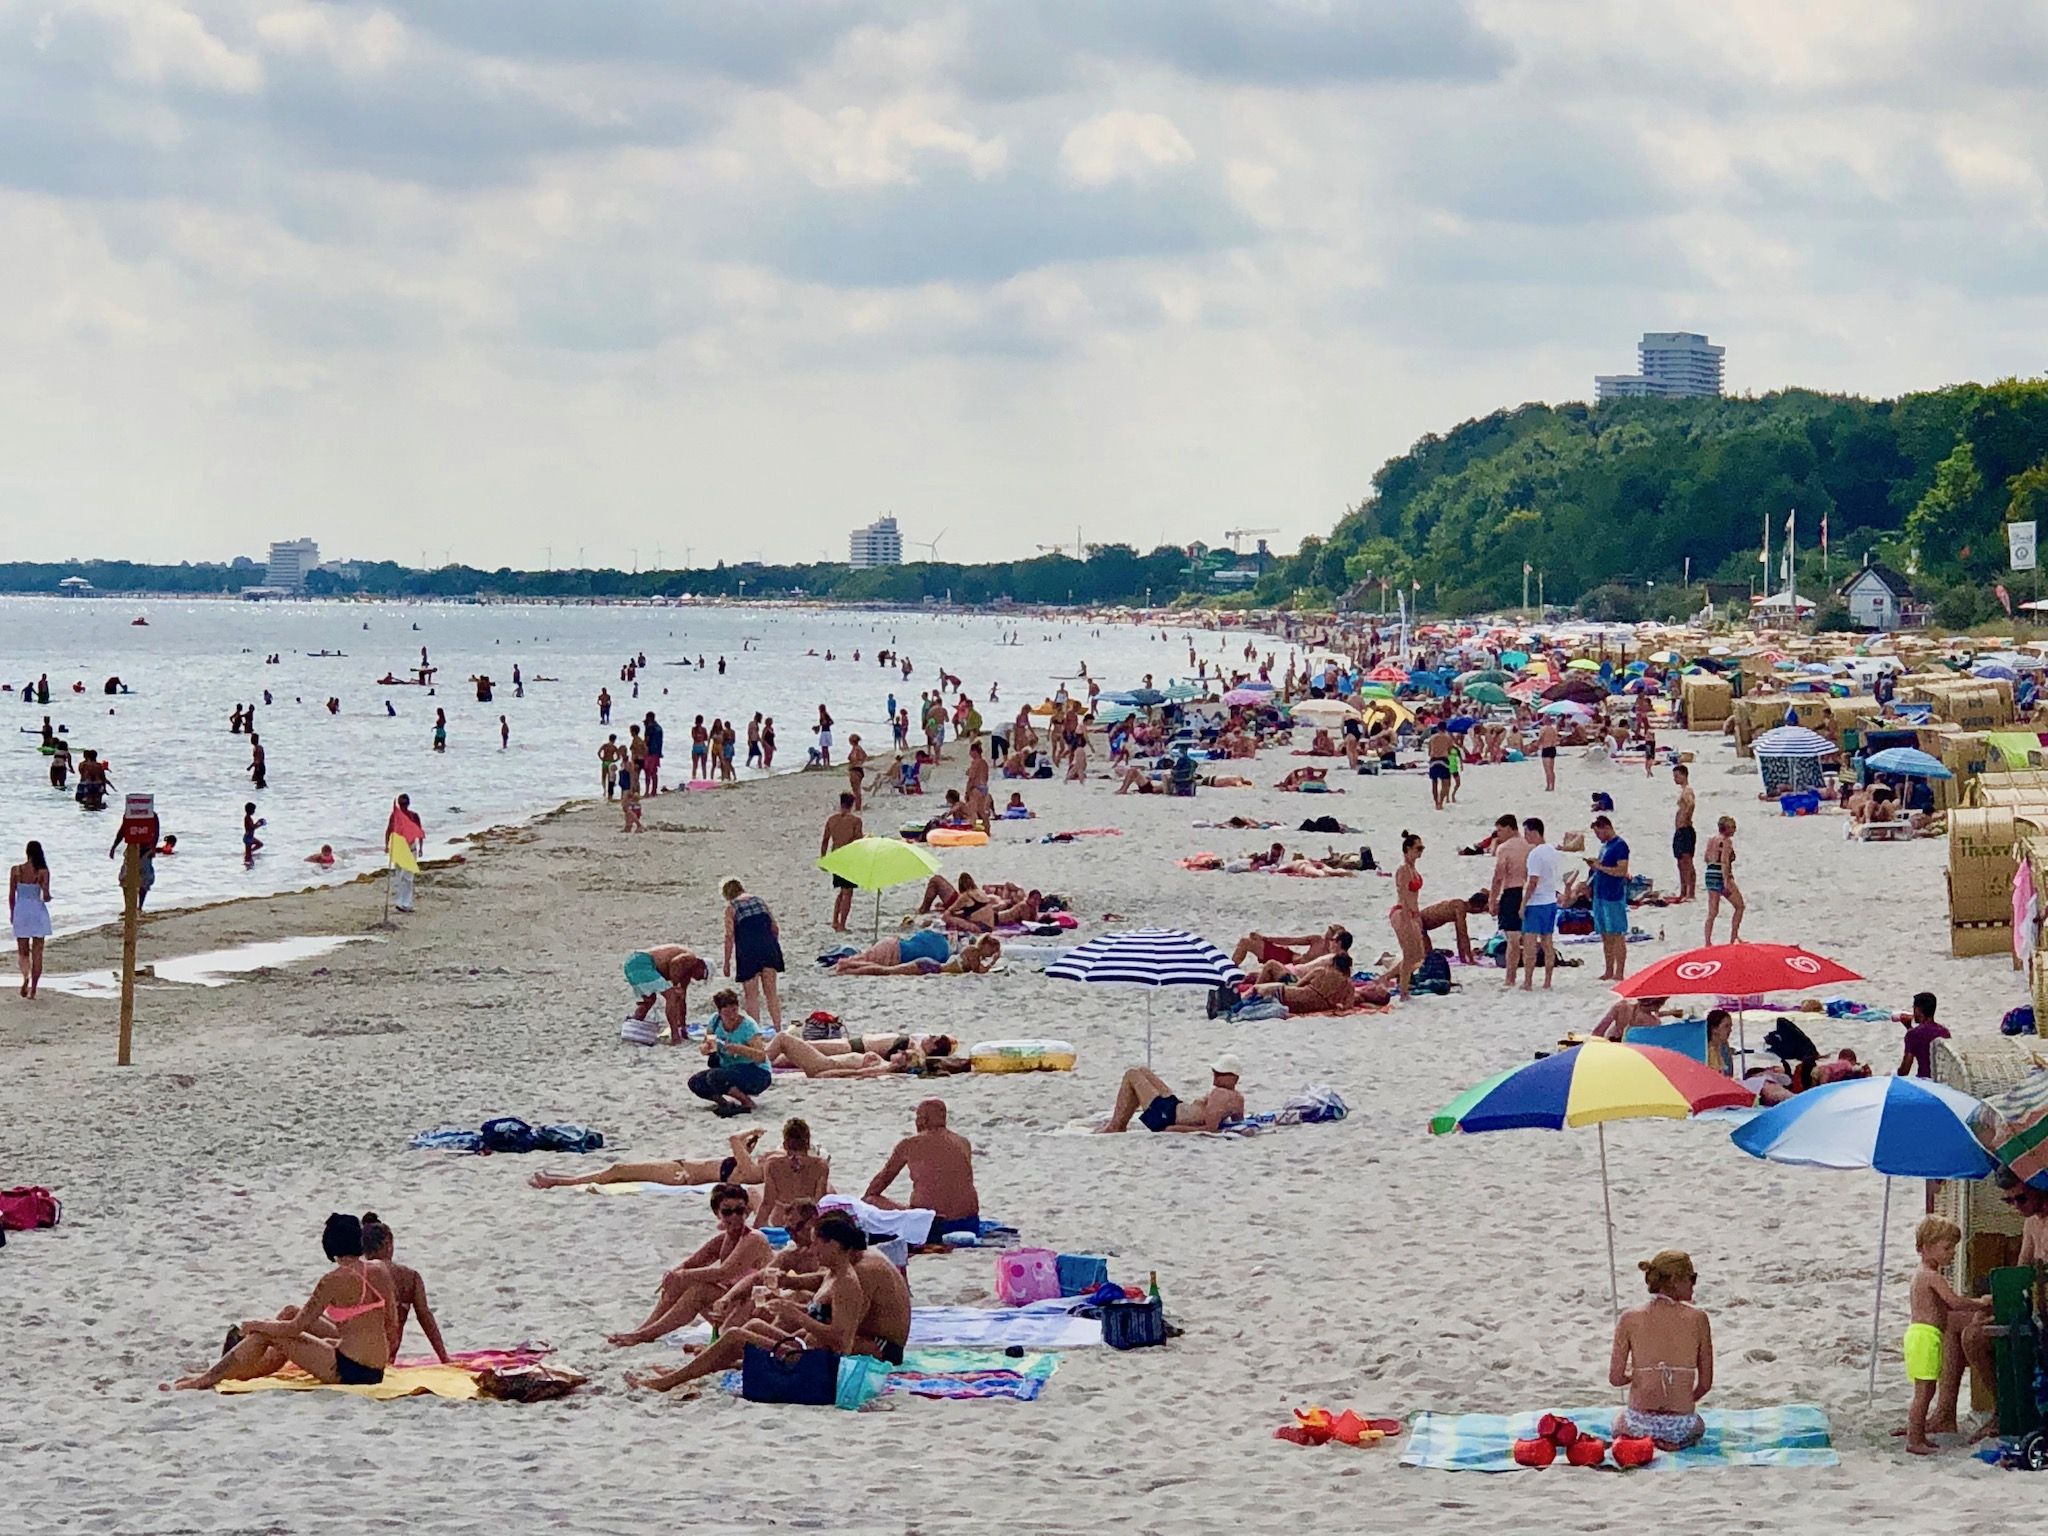 Schwimmen in der Ostsee: Tipps & Erfahrungen – unterschätzte Gefahr für Badeurlauber?